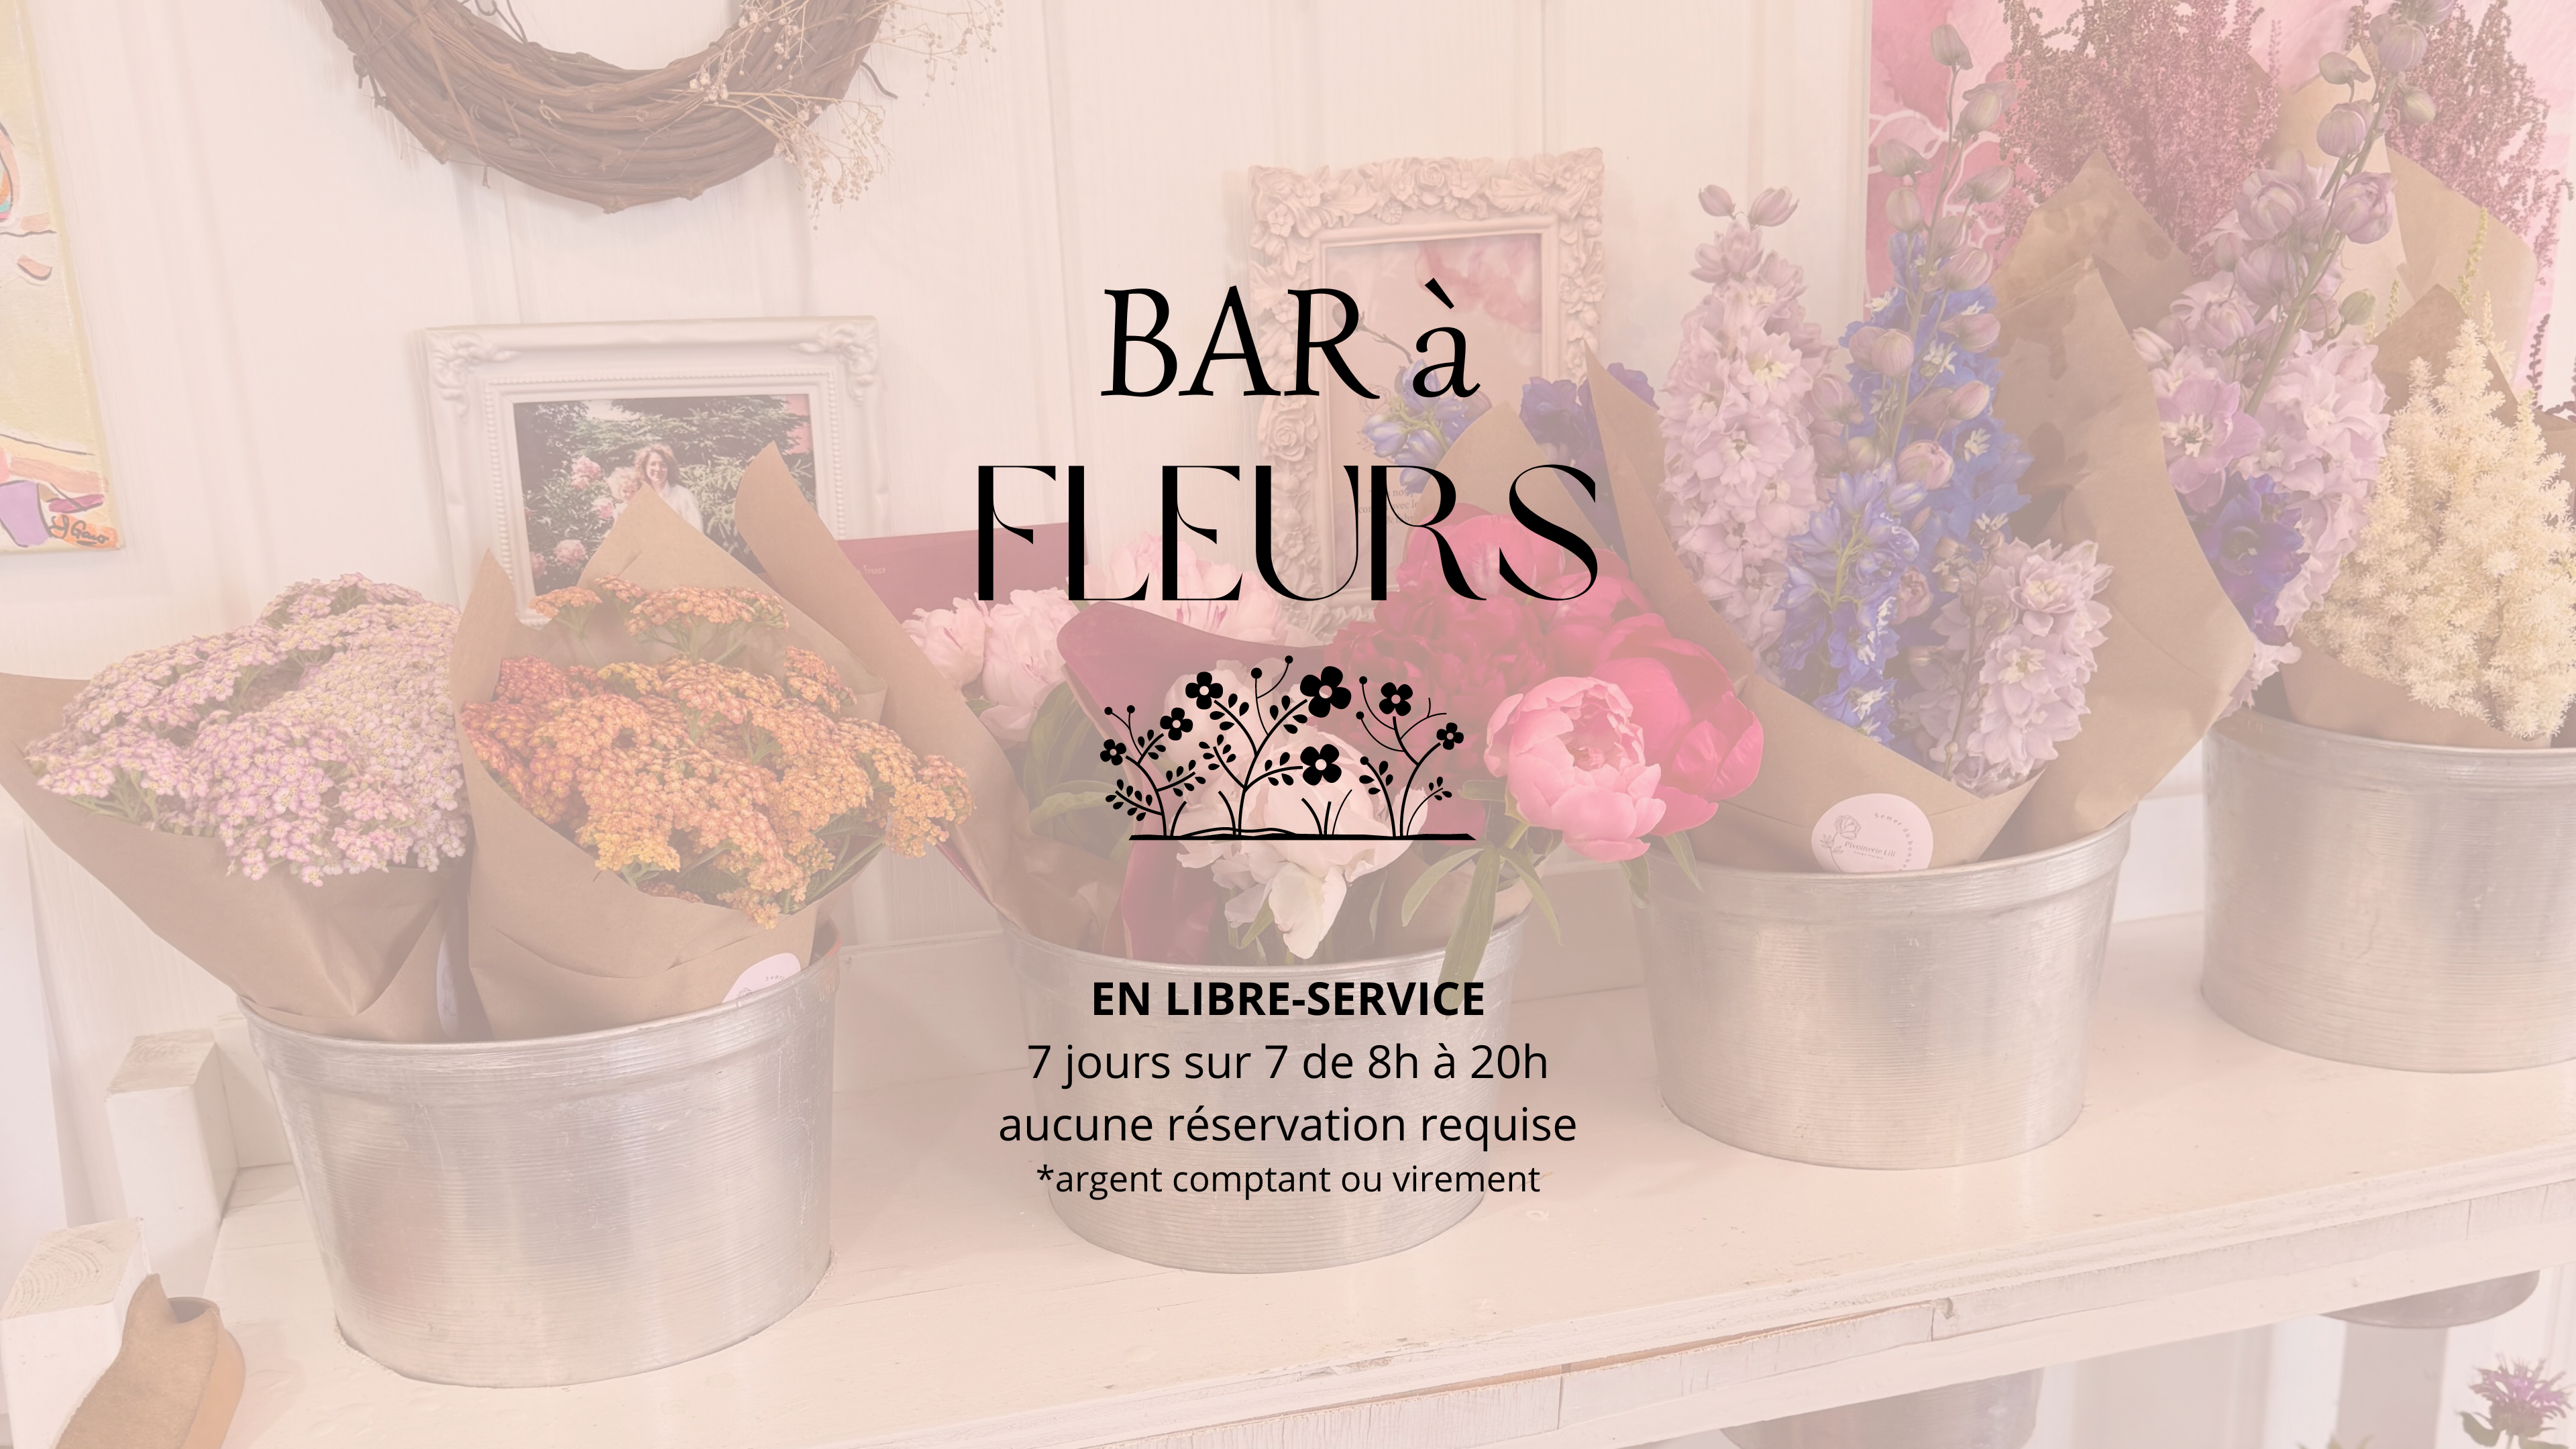 Pivoinerie Lili - Bar à fleurs